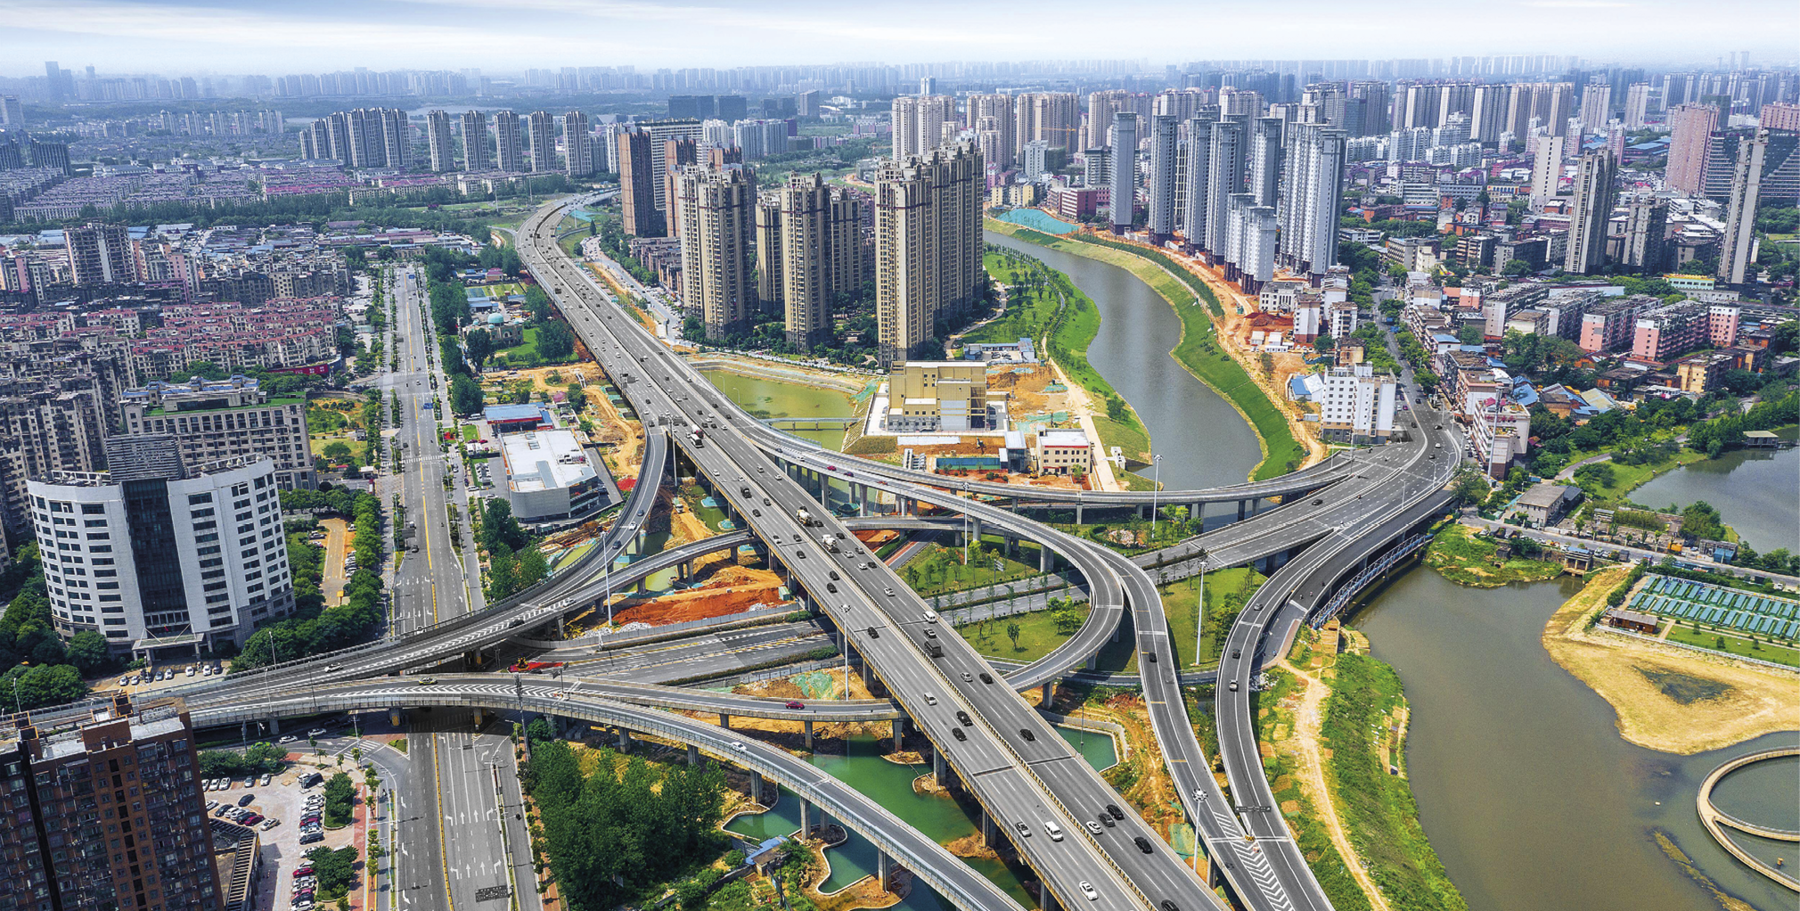 Fotografia. Vista aérea de uma cidade moderna, com destaque para várias avenidas, pontes e viadutos interconectados. À direita, um rio cujas margens direita e esquerda são ligadas por diversas pontes. Ao fundo, grandes prédios.